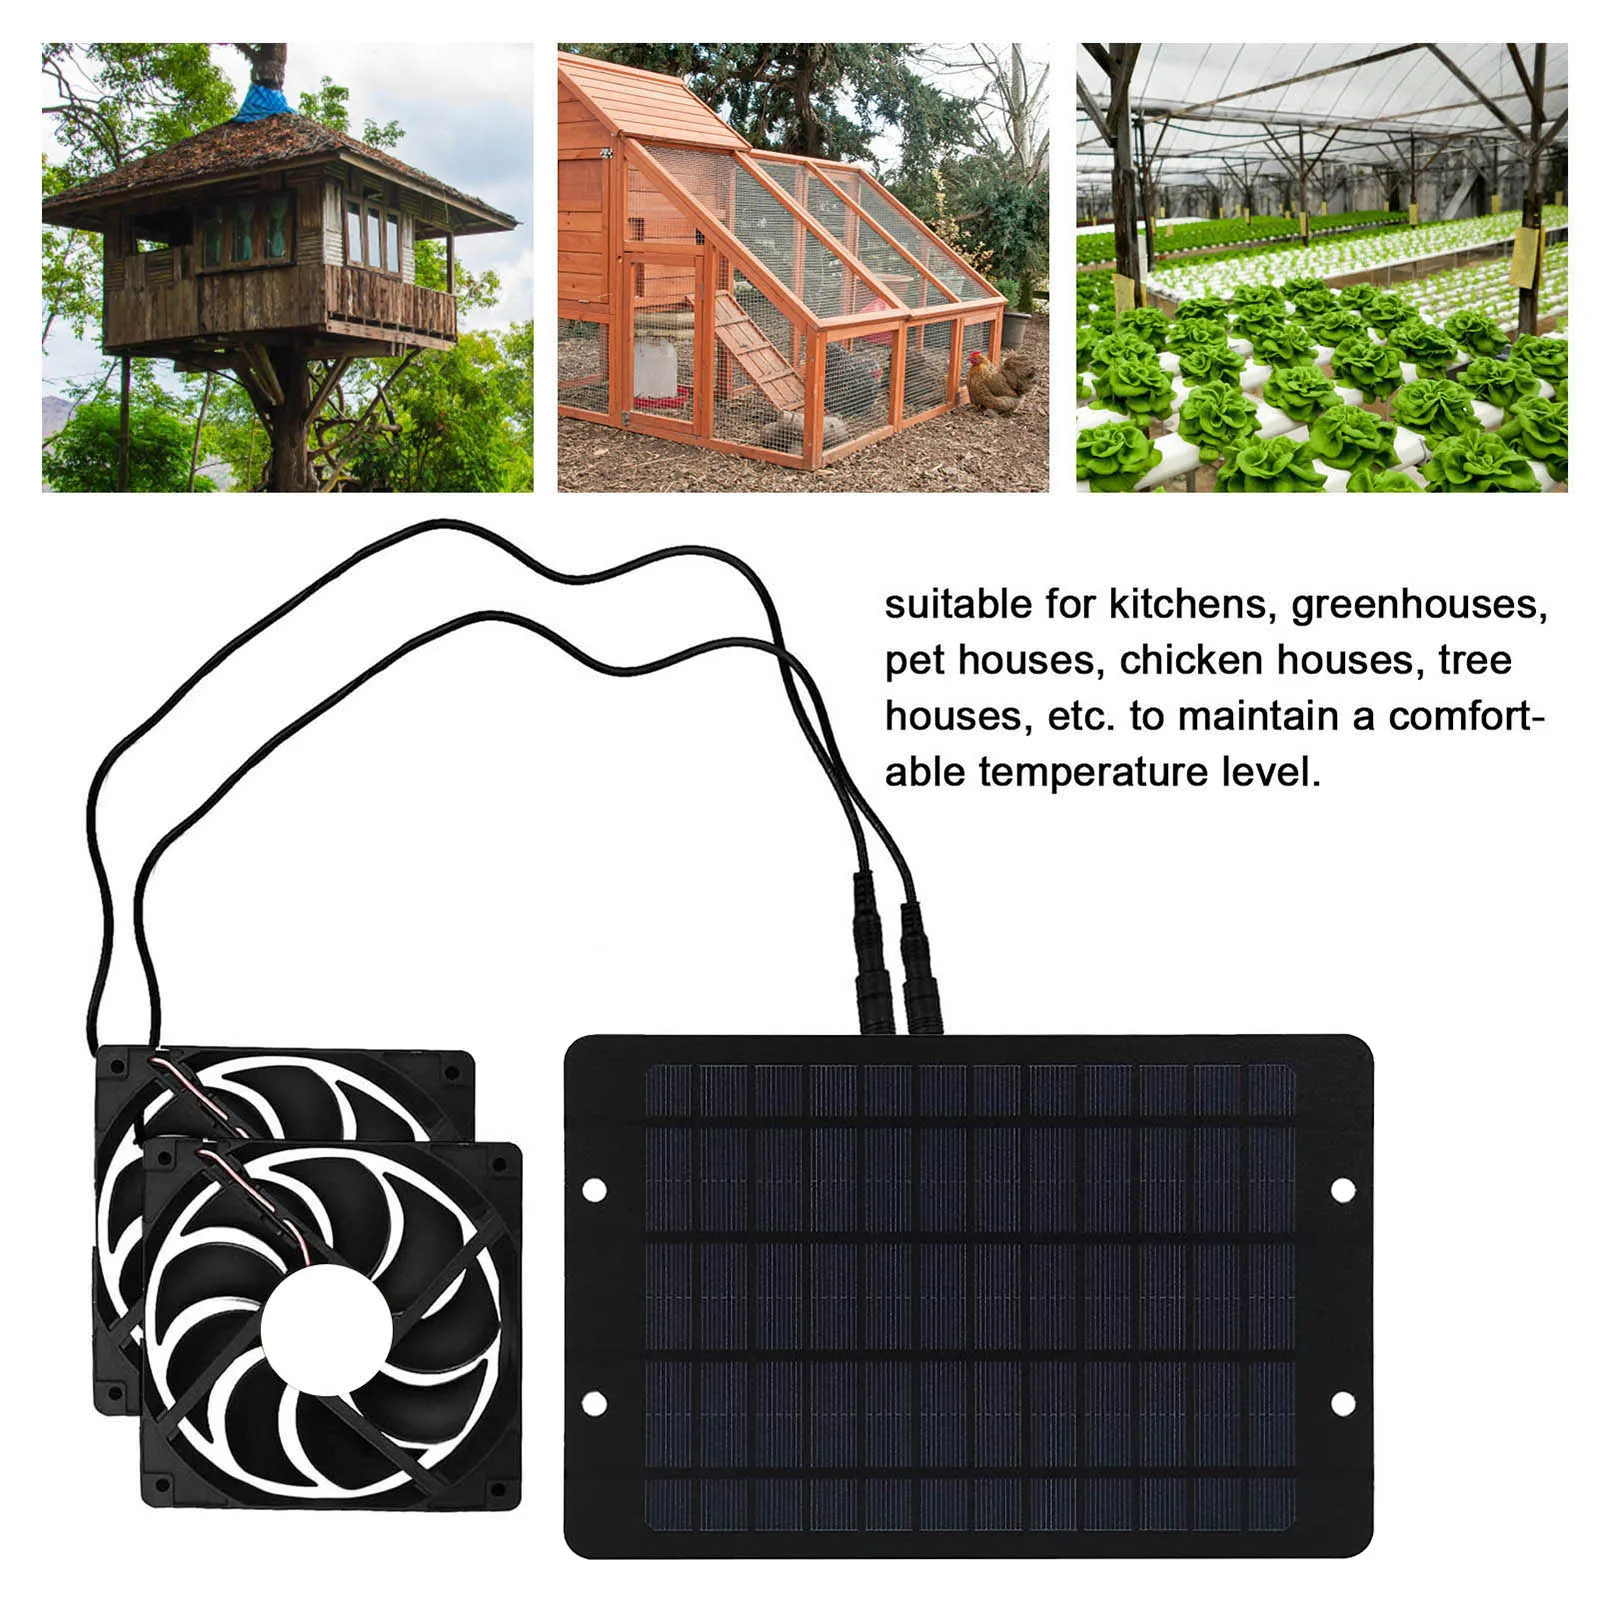 Слънчевата енергия Висококачествени материали Слънчев вентилатор Вентилатор за вентилация оранжерии Фен на колела Лаптоп се захранва от слънчеви панели